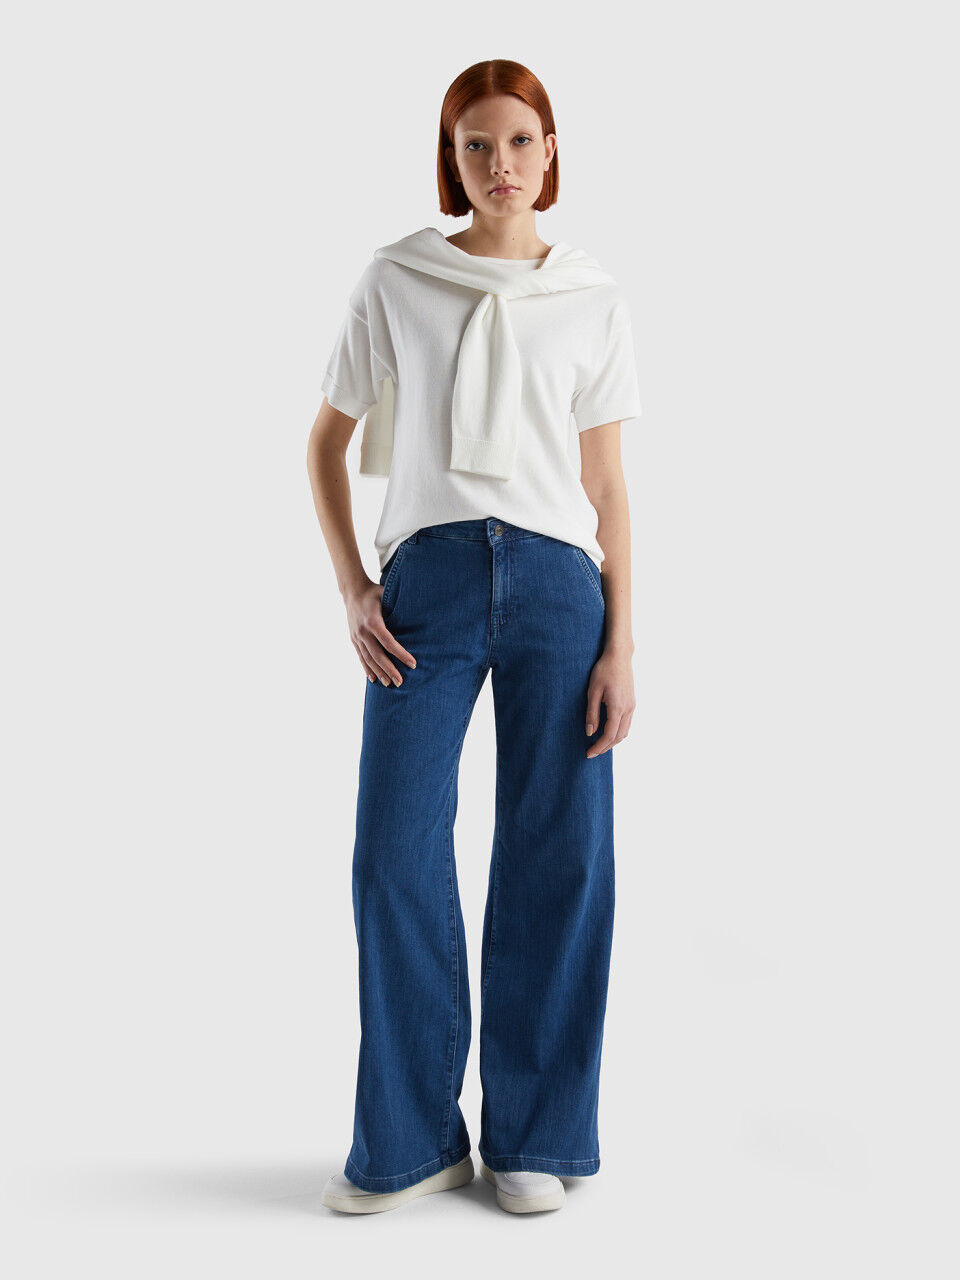 miljøforkæmper halvkugle Symphony Women's Jeans New Collection 2023 | Benetton